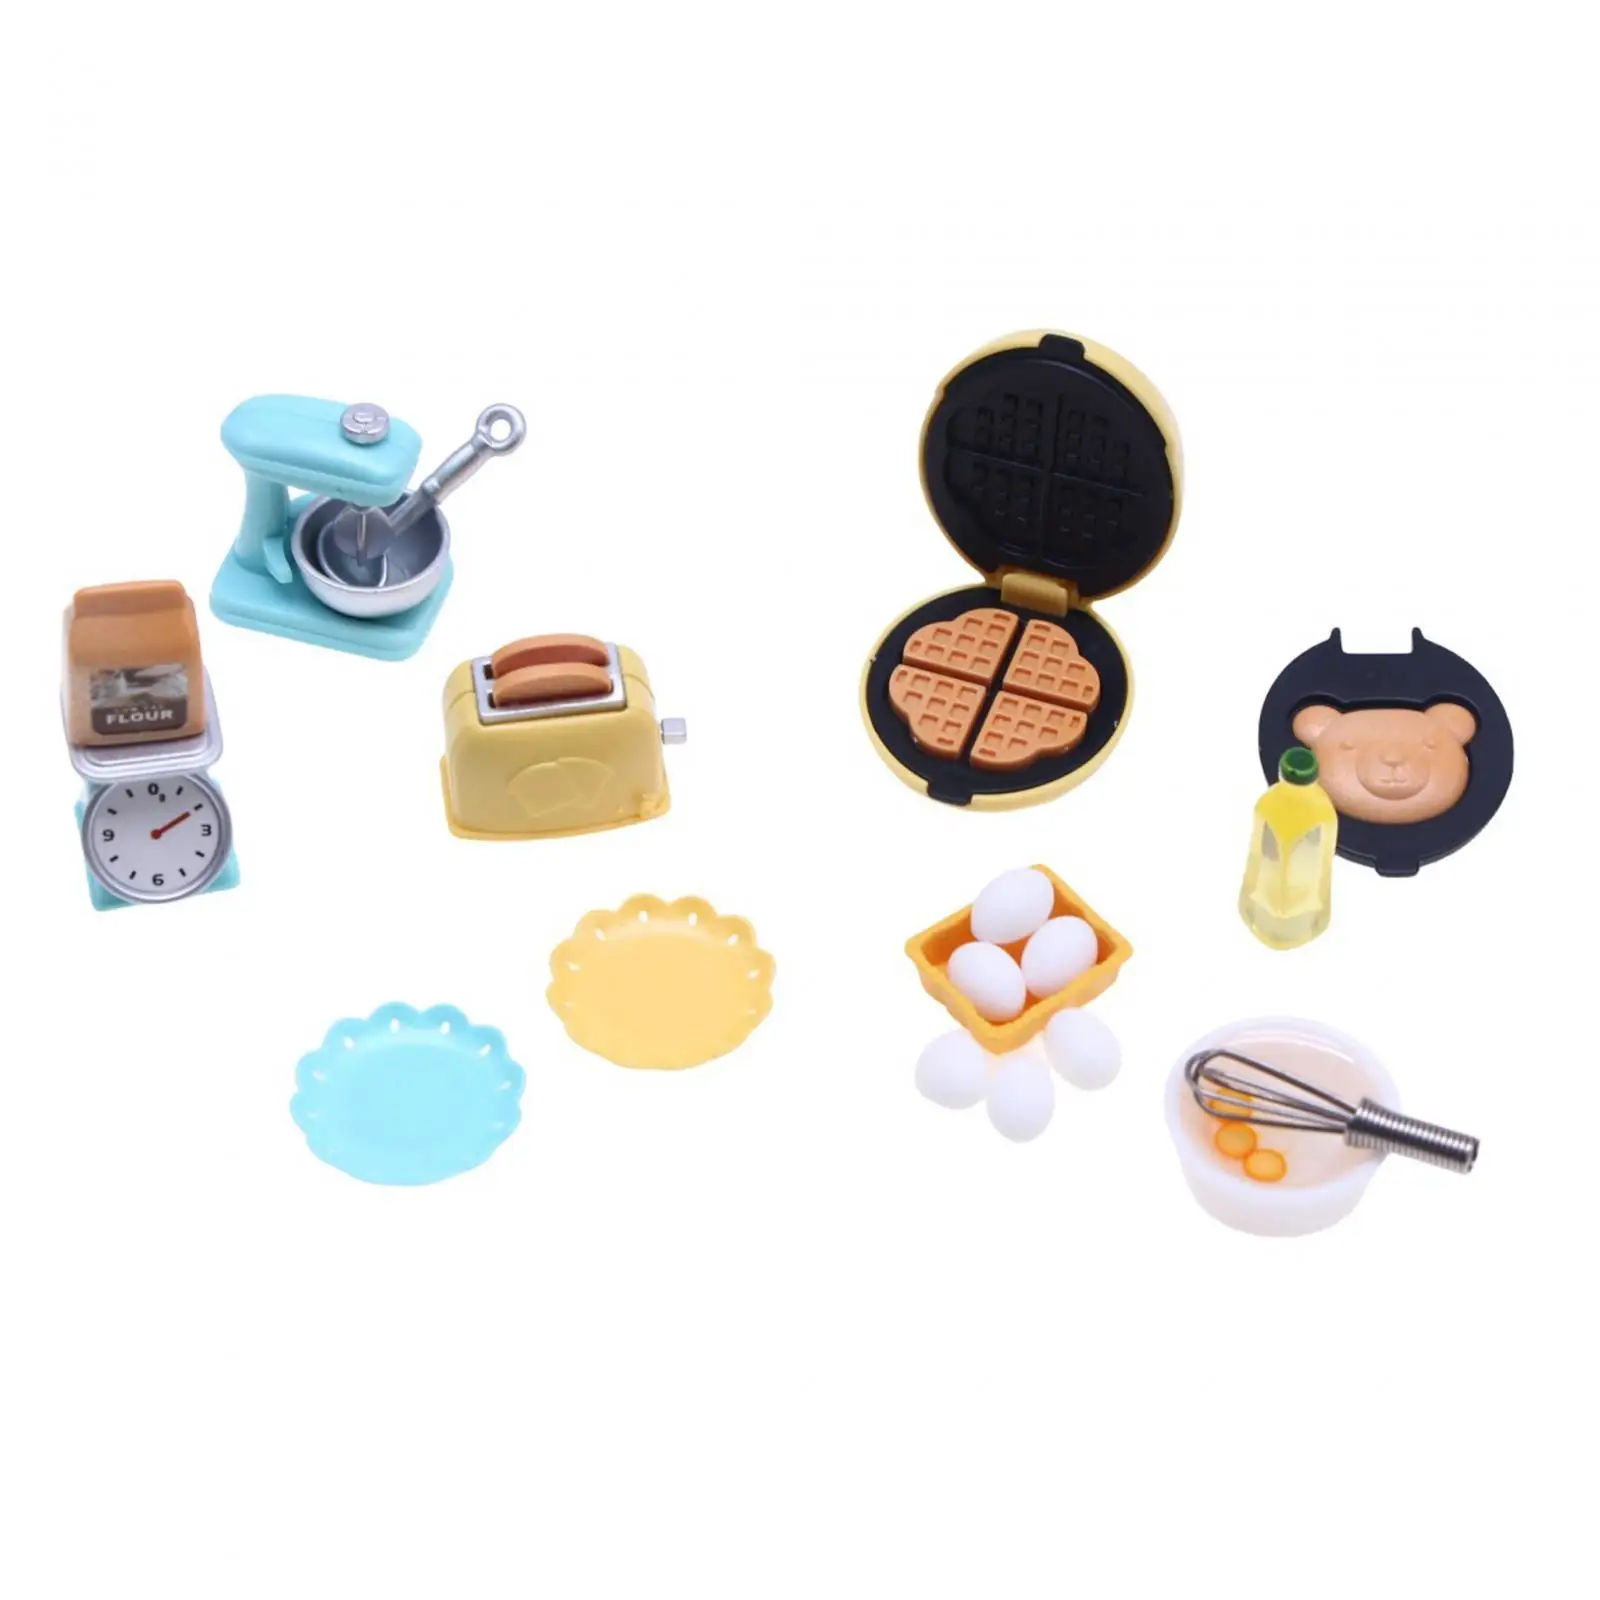 1/12 Miniature Dollhouse Kitchen Set, Kitchen Appliances Toys, Toasters, Miniature Furniture Toys for Children Girls Gift